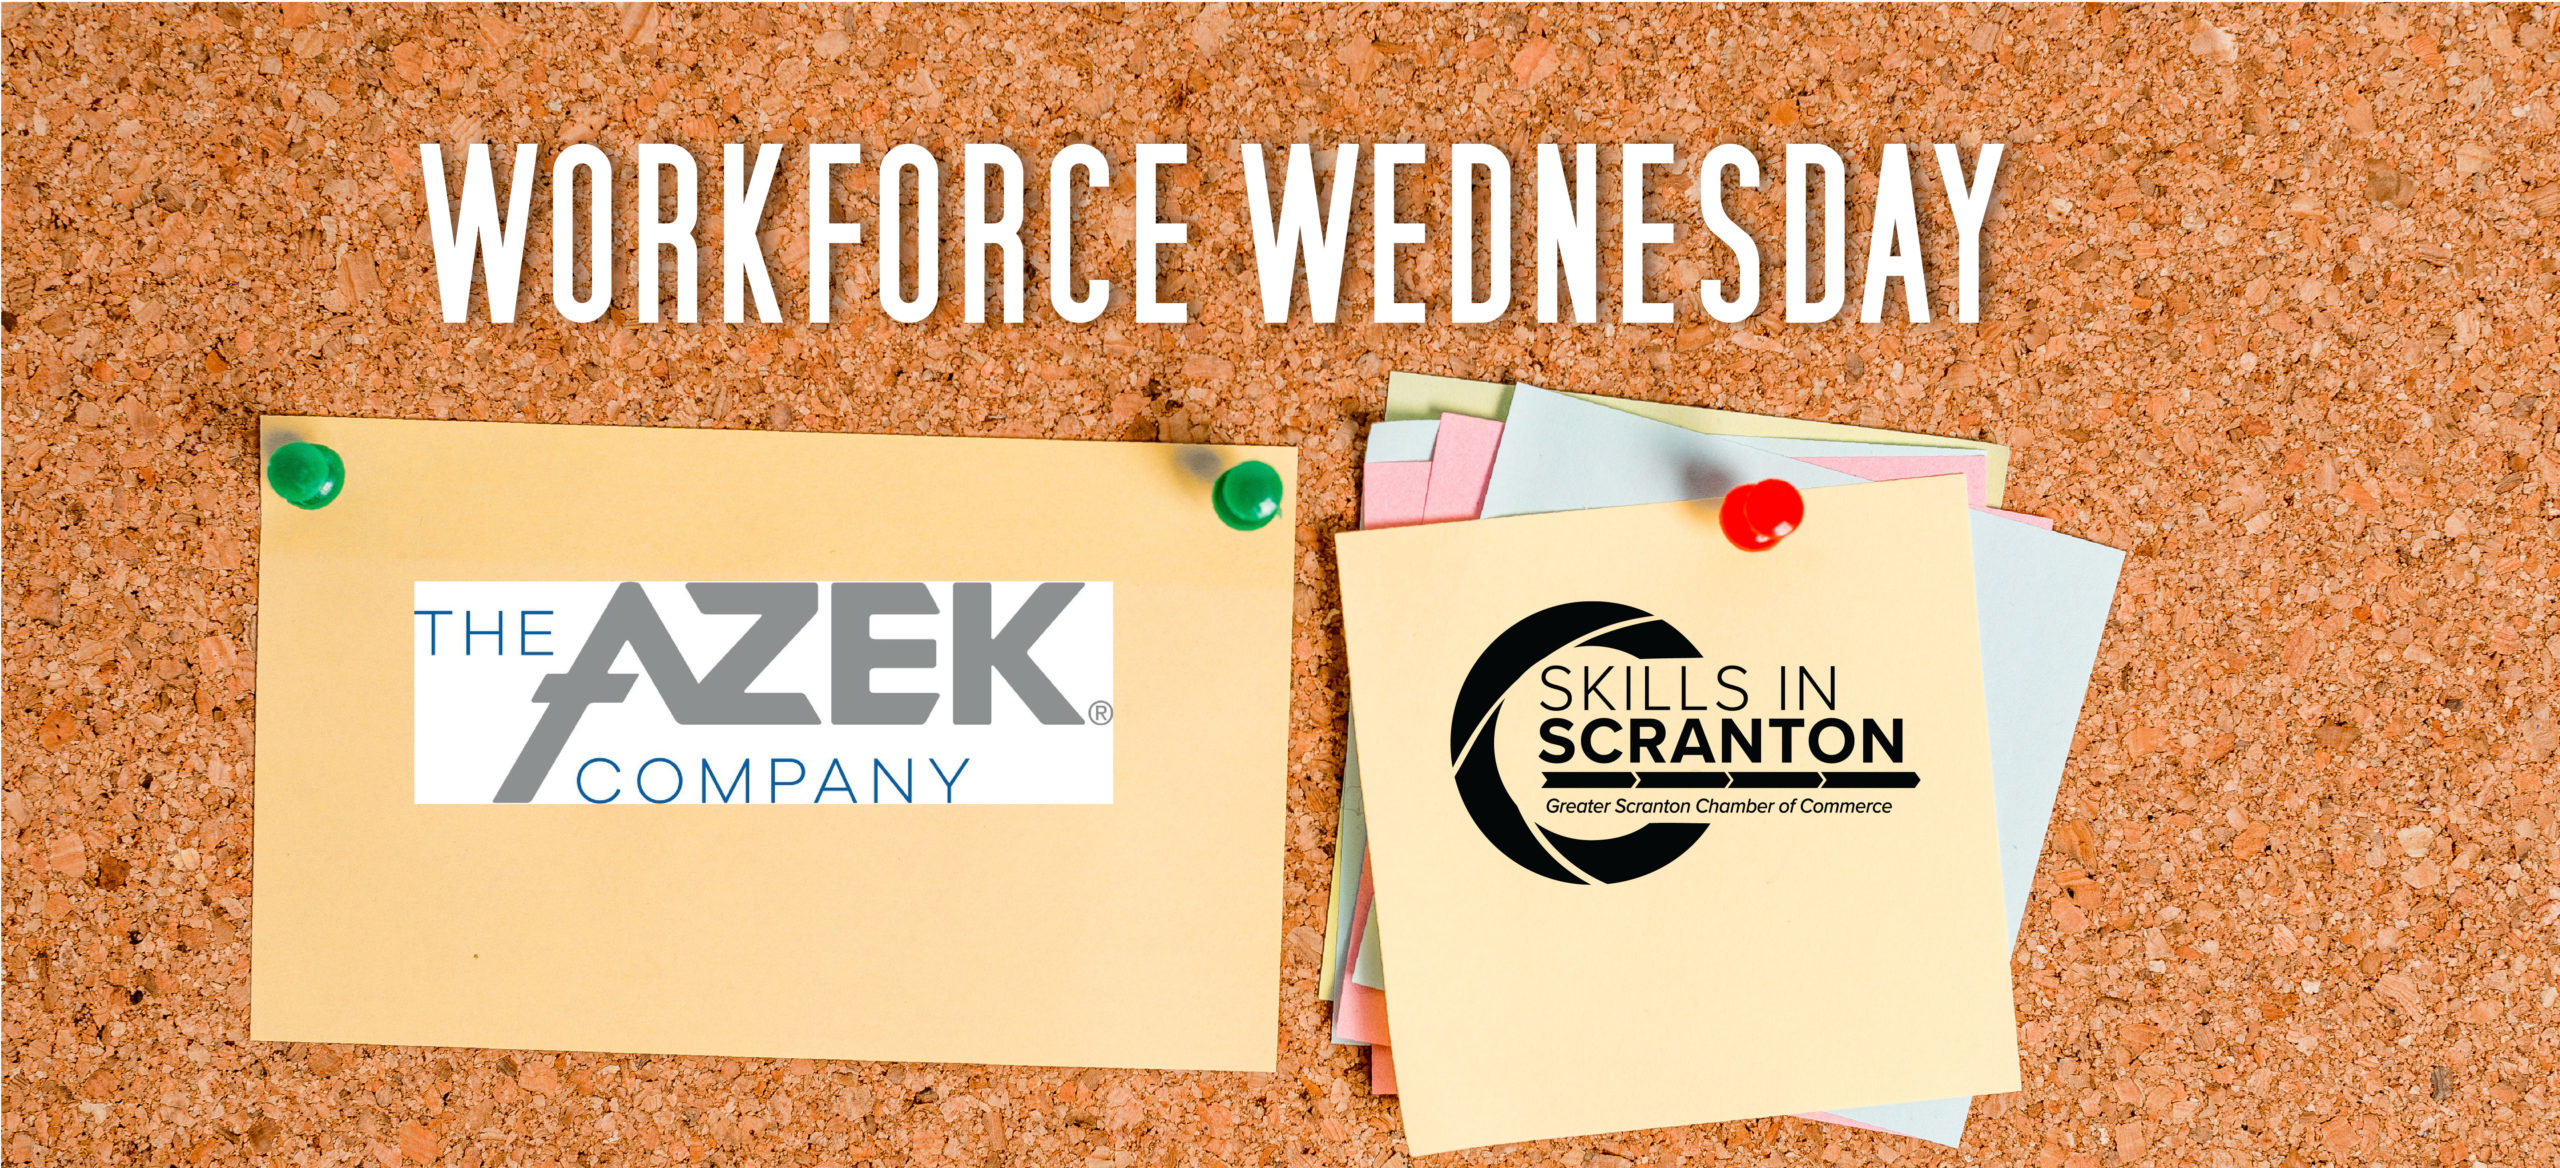 Workforce Wednesday: The Azek Company